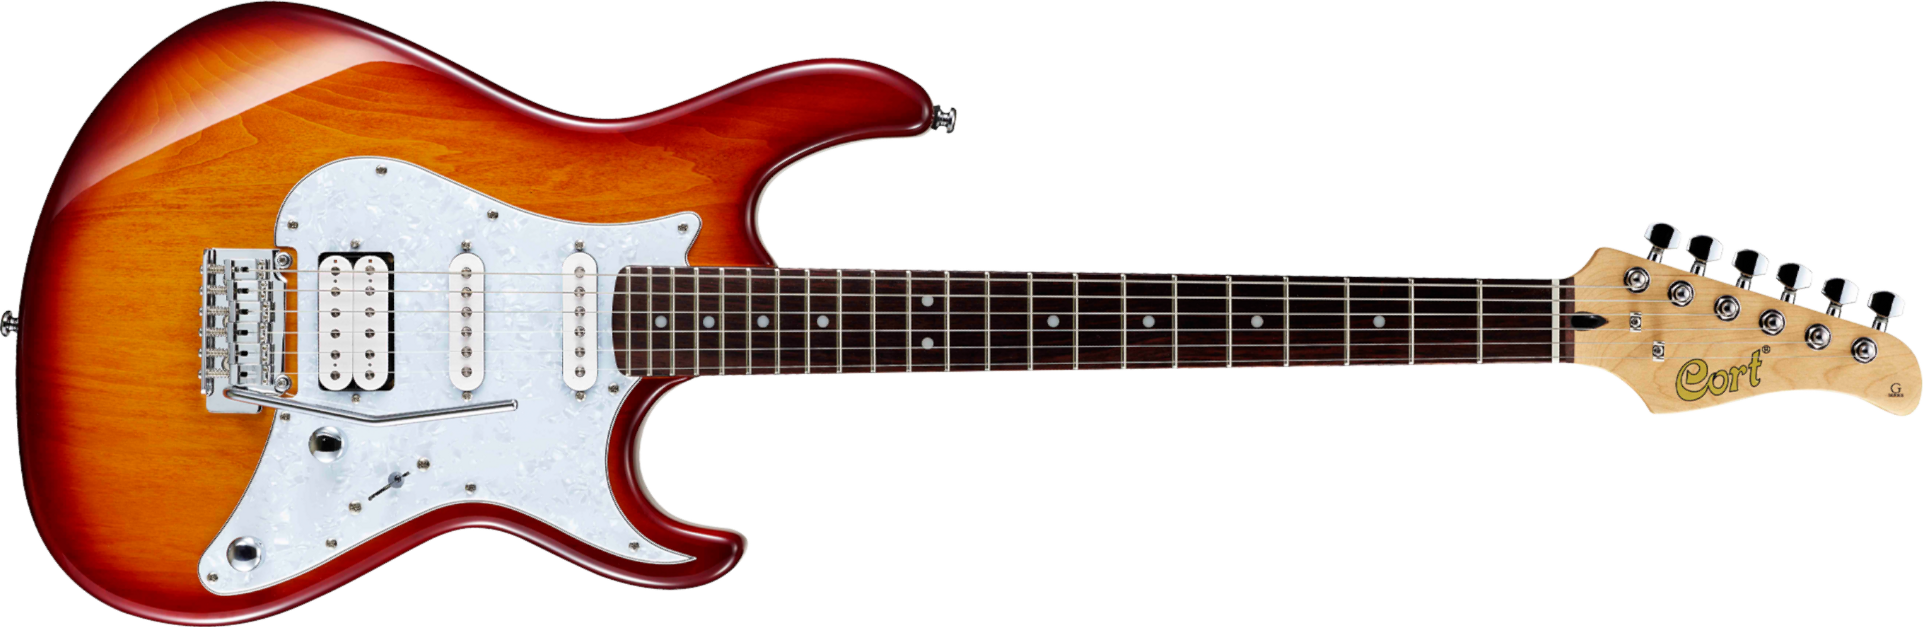 Cort G250 Tab Hss Trem - Tobacco Sunburst - Elektrische gitaar in Str-vorm - Main picture